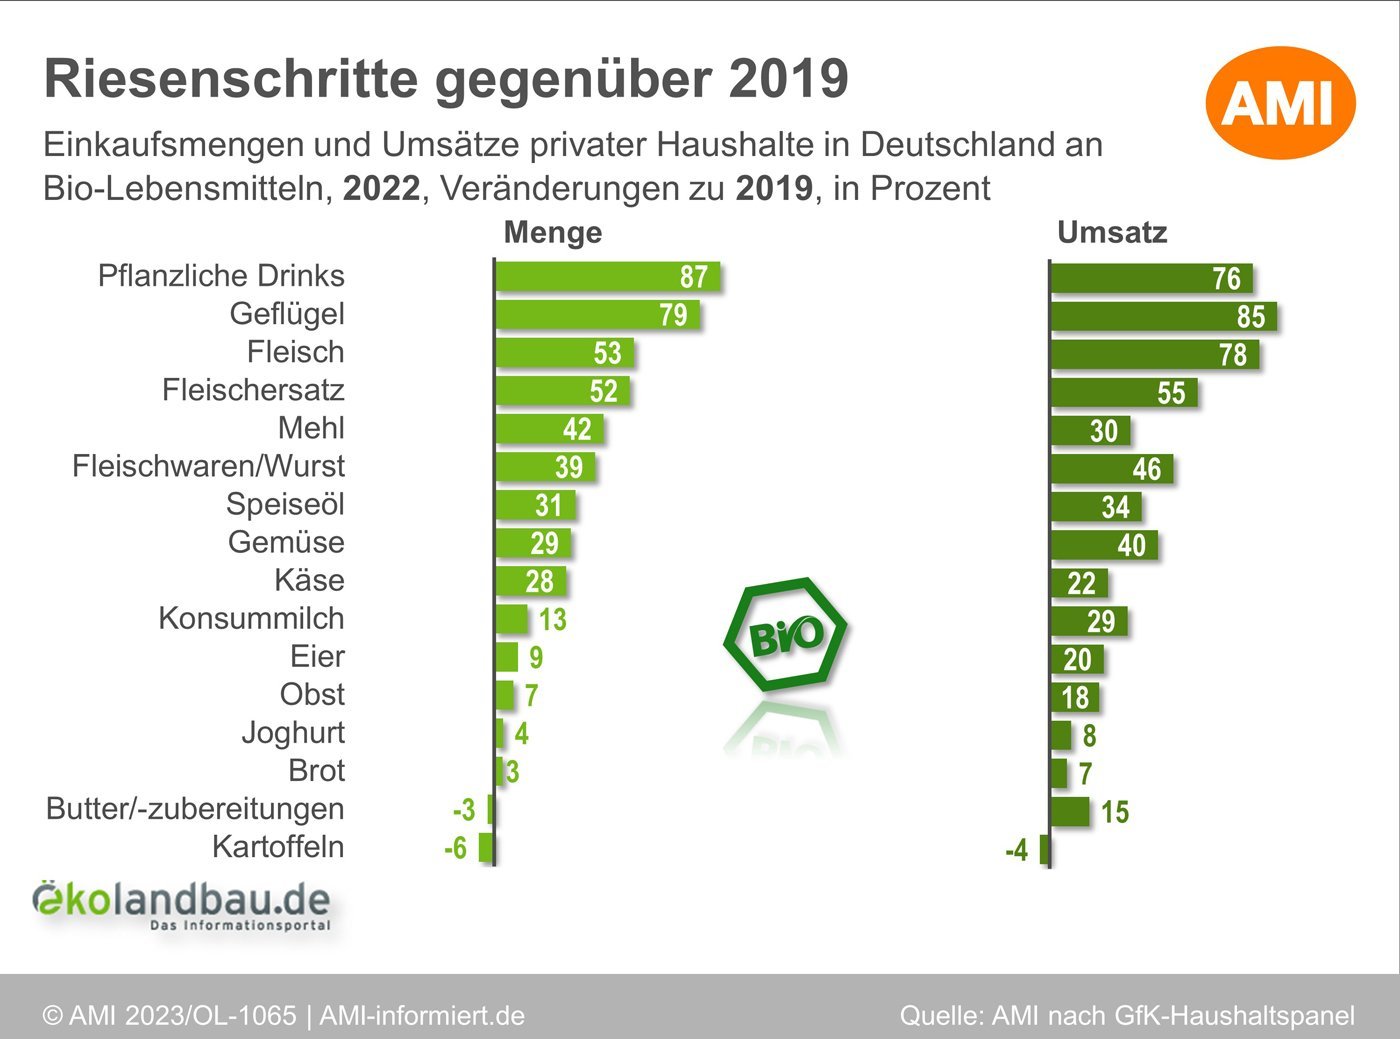 Einkaufsmengen und Umsätze privater Haushalte in Deutschland an Bio-Lebensmitteln nach Produktkategorien im Jahresvergleich 2019 und 2022. Klick führt zu Großansicht in neuem Fenster.